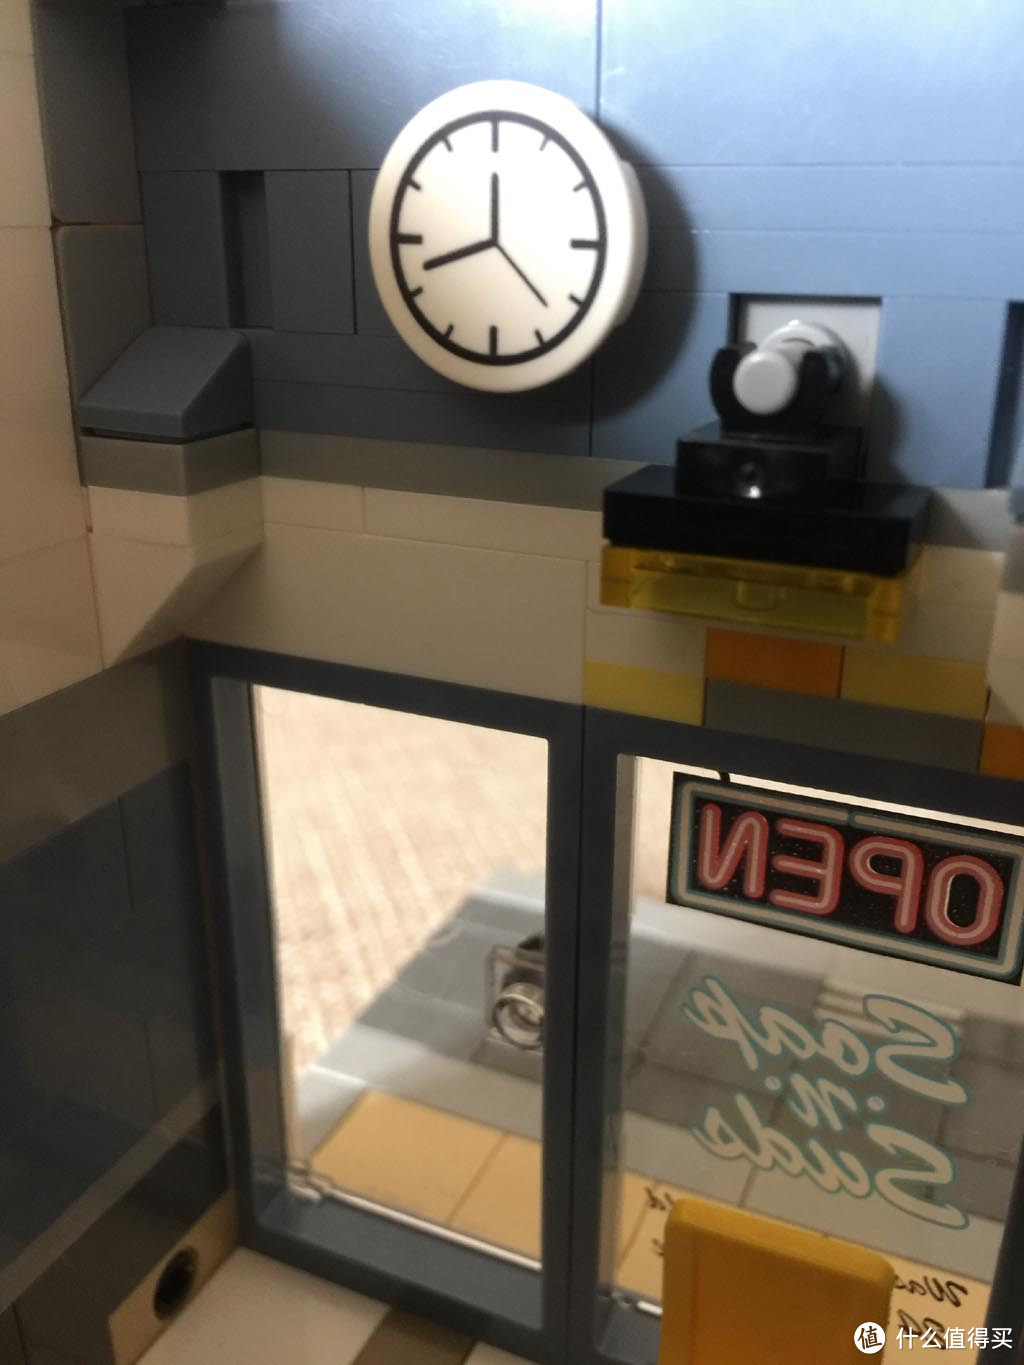 LEGO 乐高 10251 Brick Bank积木银行